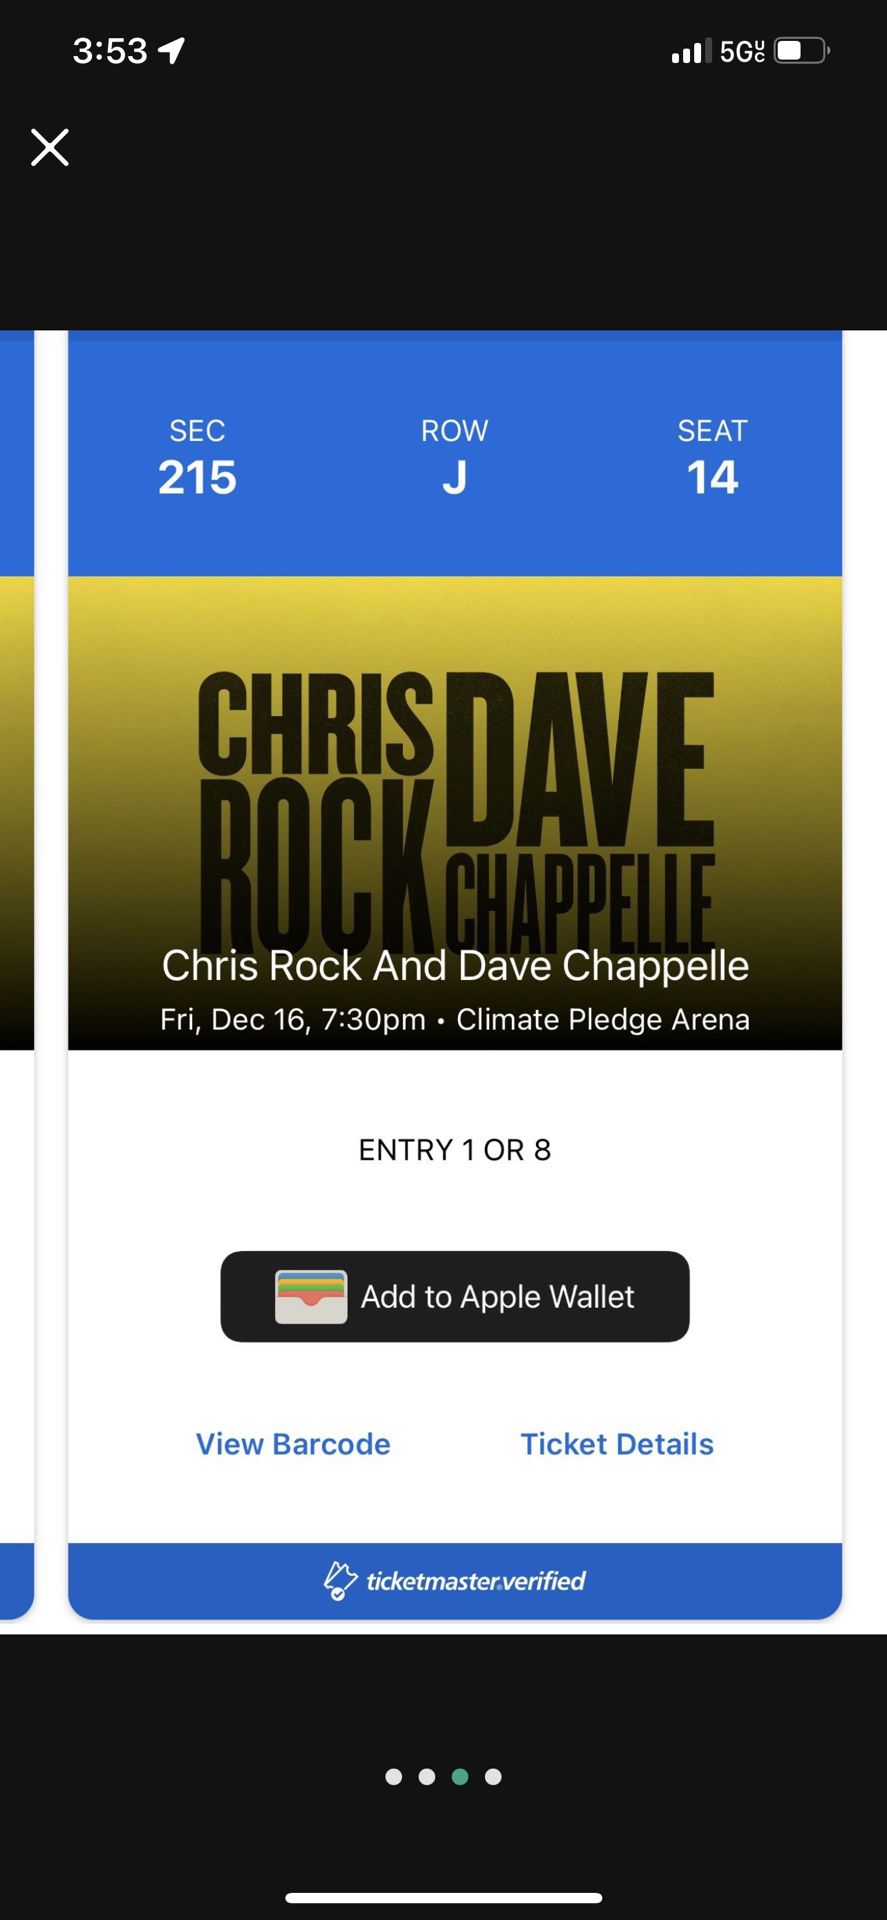 Chris Rock & Dave Chappelle